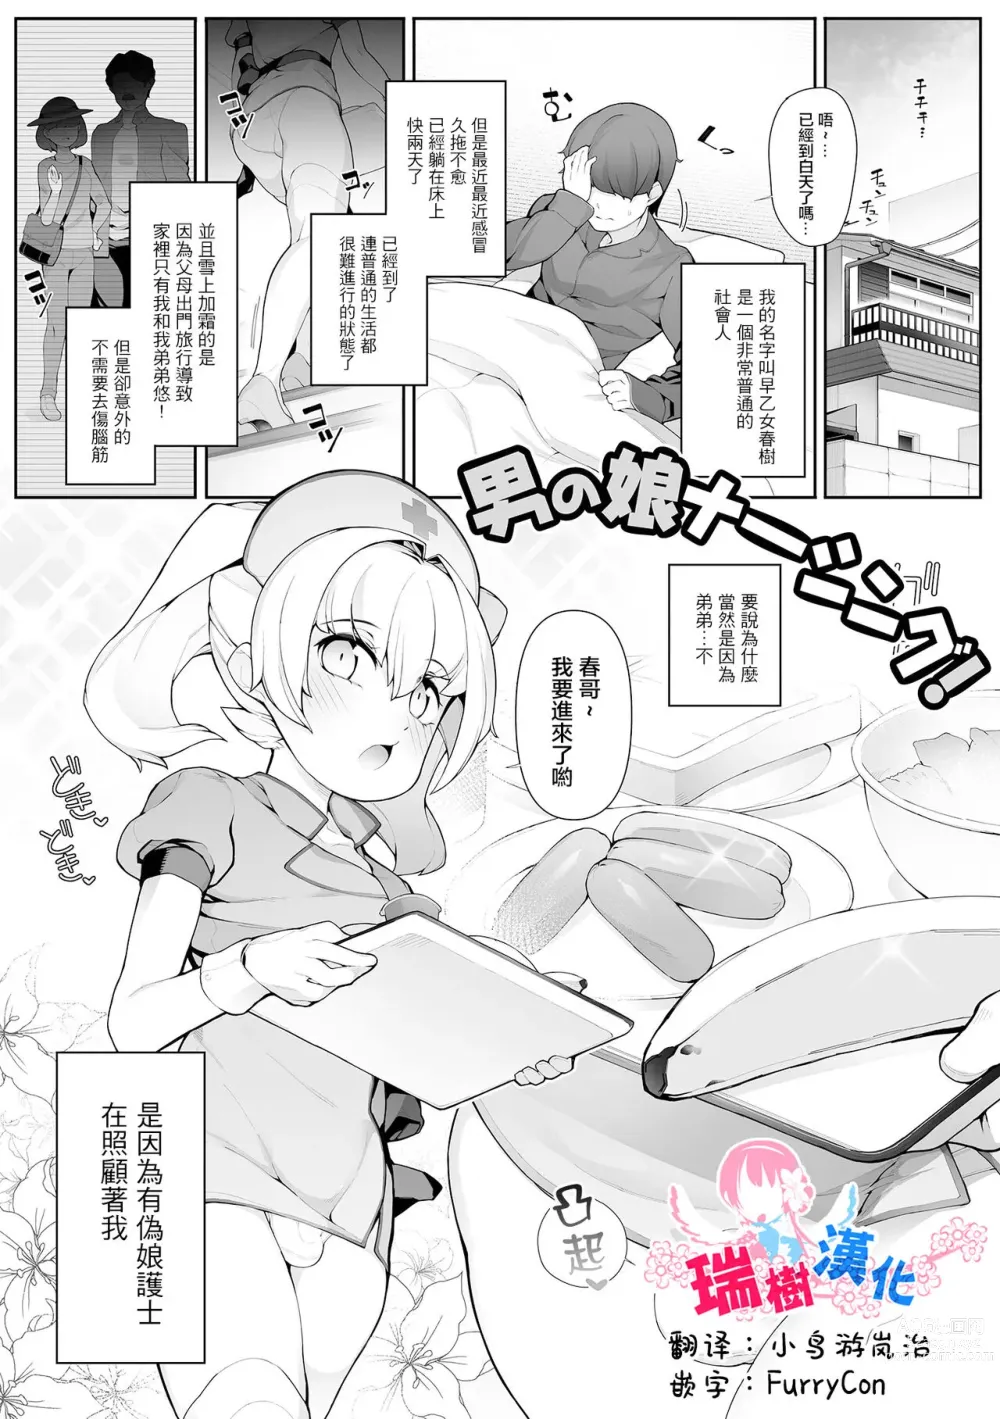 Page 1 of manga Otokonoko Nursing!